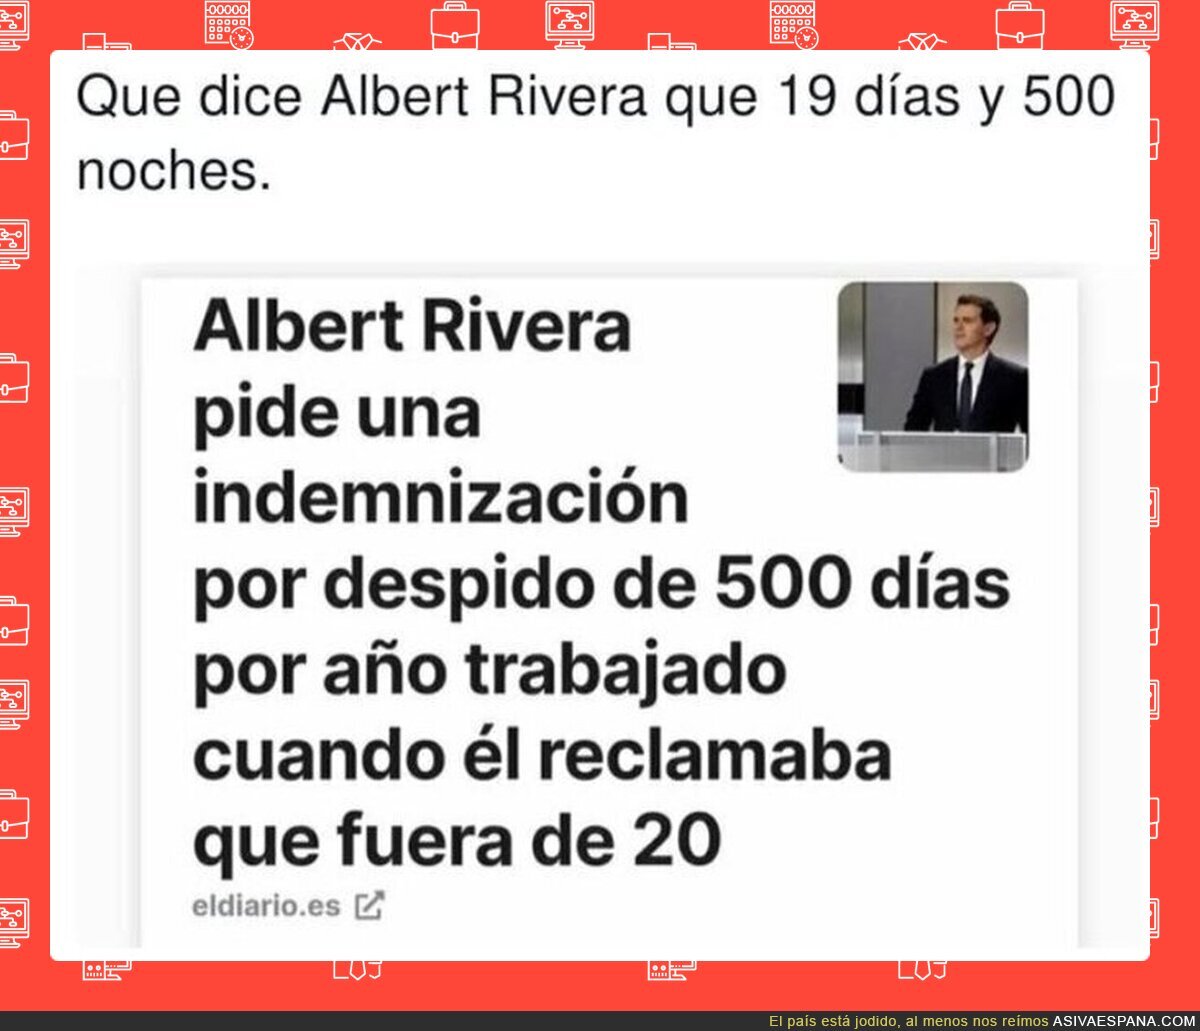 Viva el despido libre que reclamaba Albert Rivera